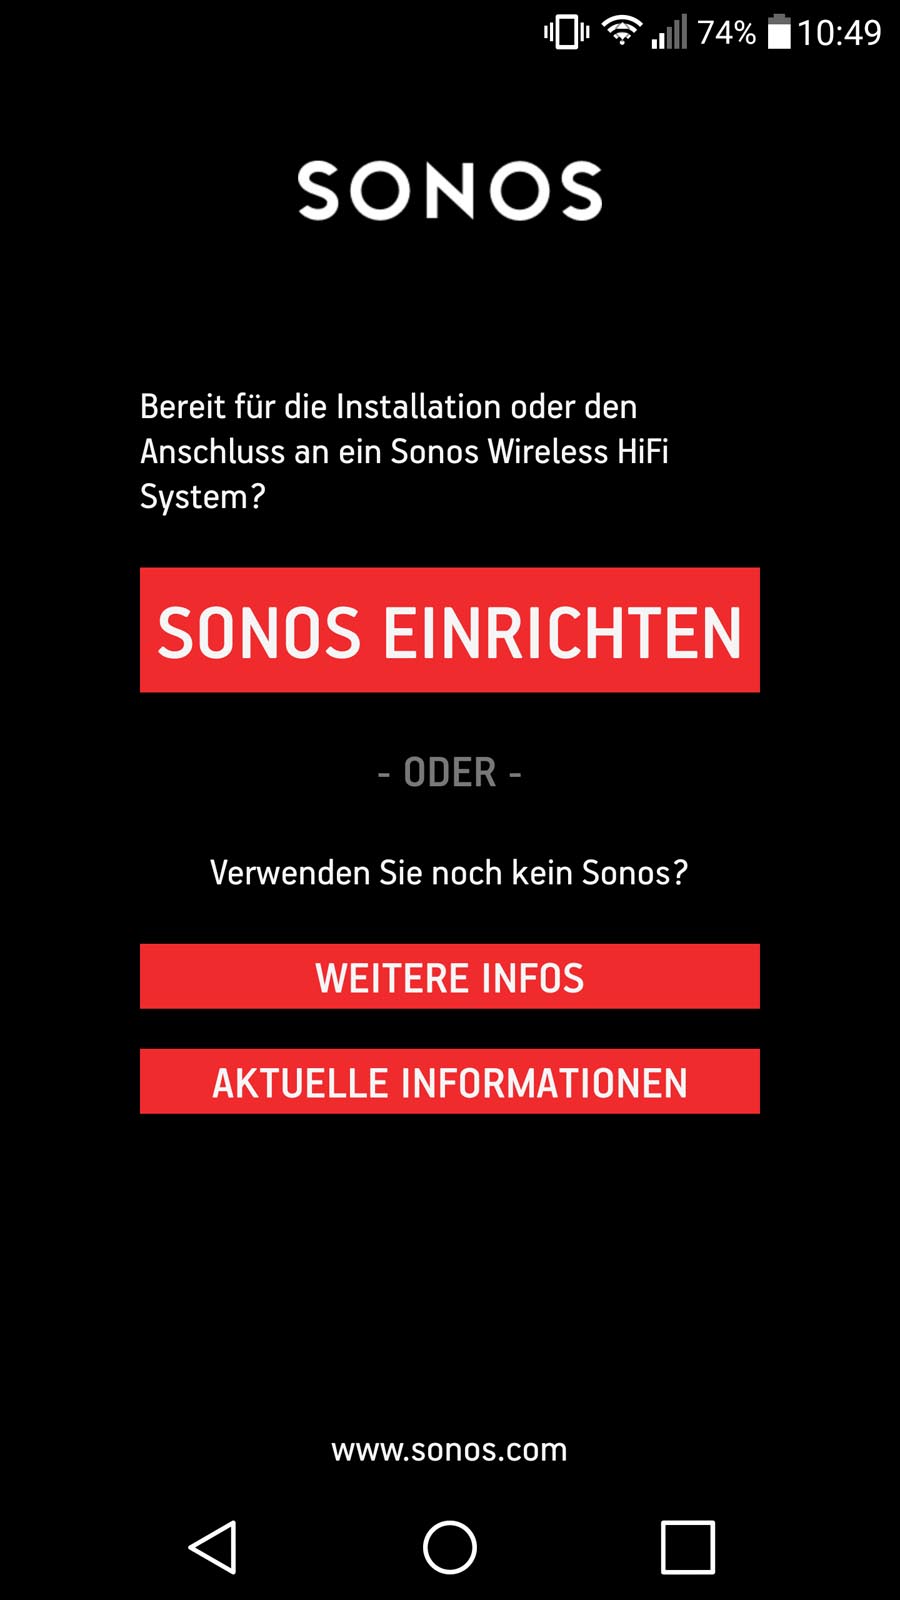 Sonos - Einrichtung